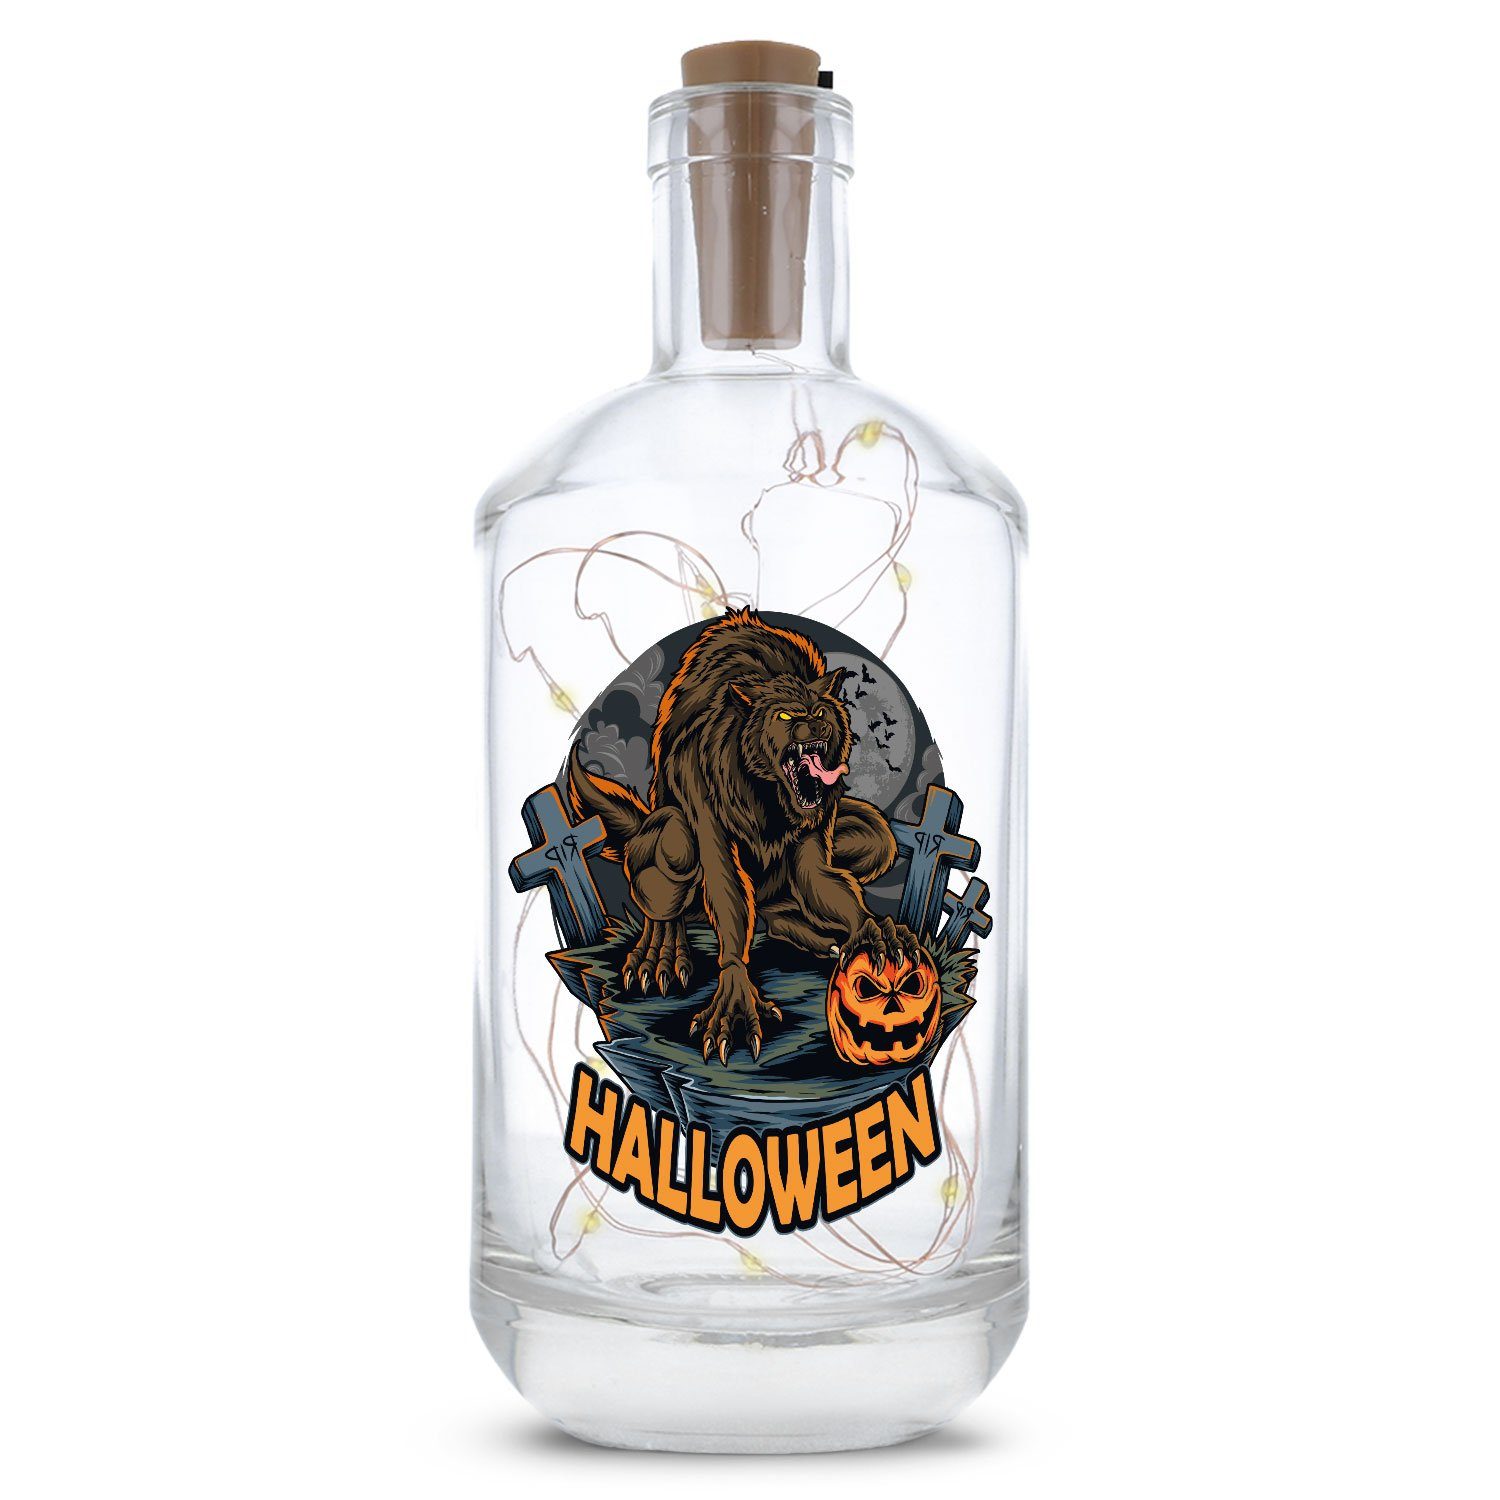 GRAVURZEILE Lichterkette Flasche mit UV-Druck - im Halloween Werwolf V1 Design, 20 LEDs Lichterkette mit Schalter am Korken Drahtlichterkette